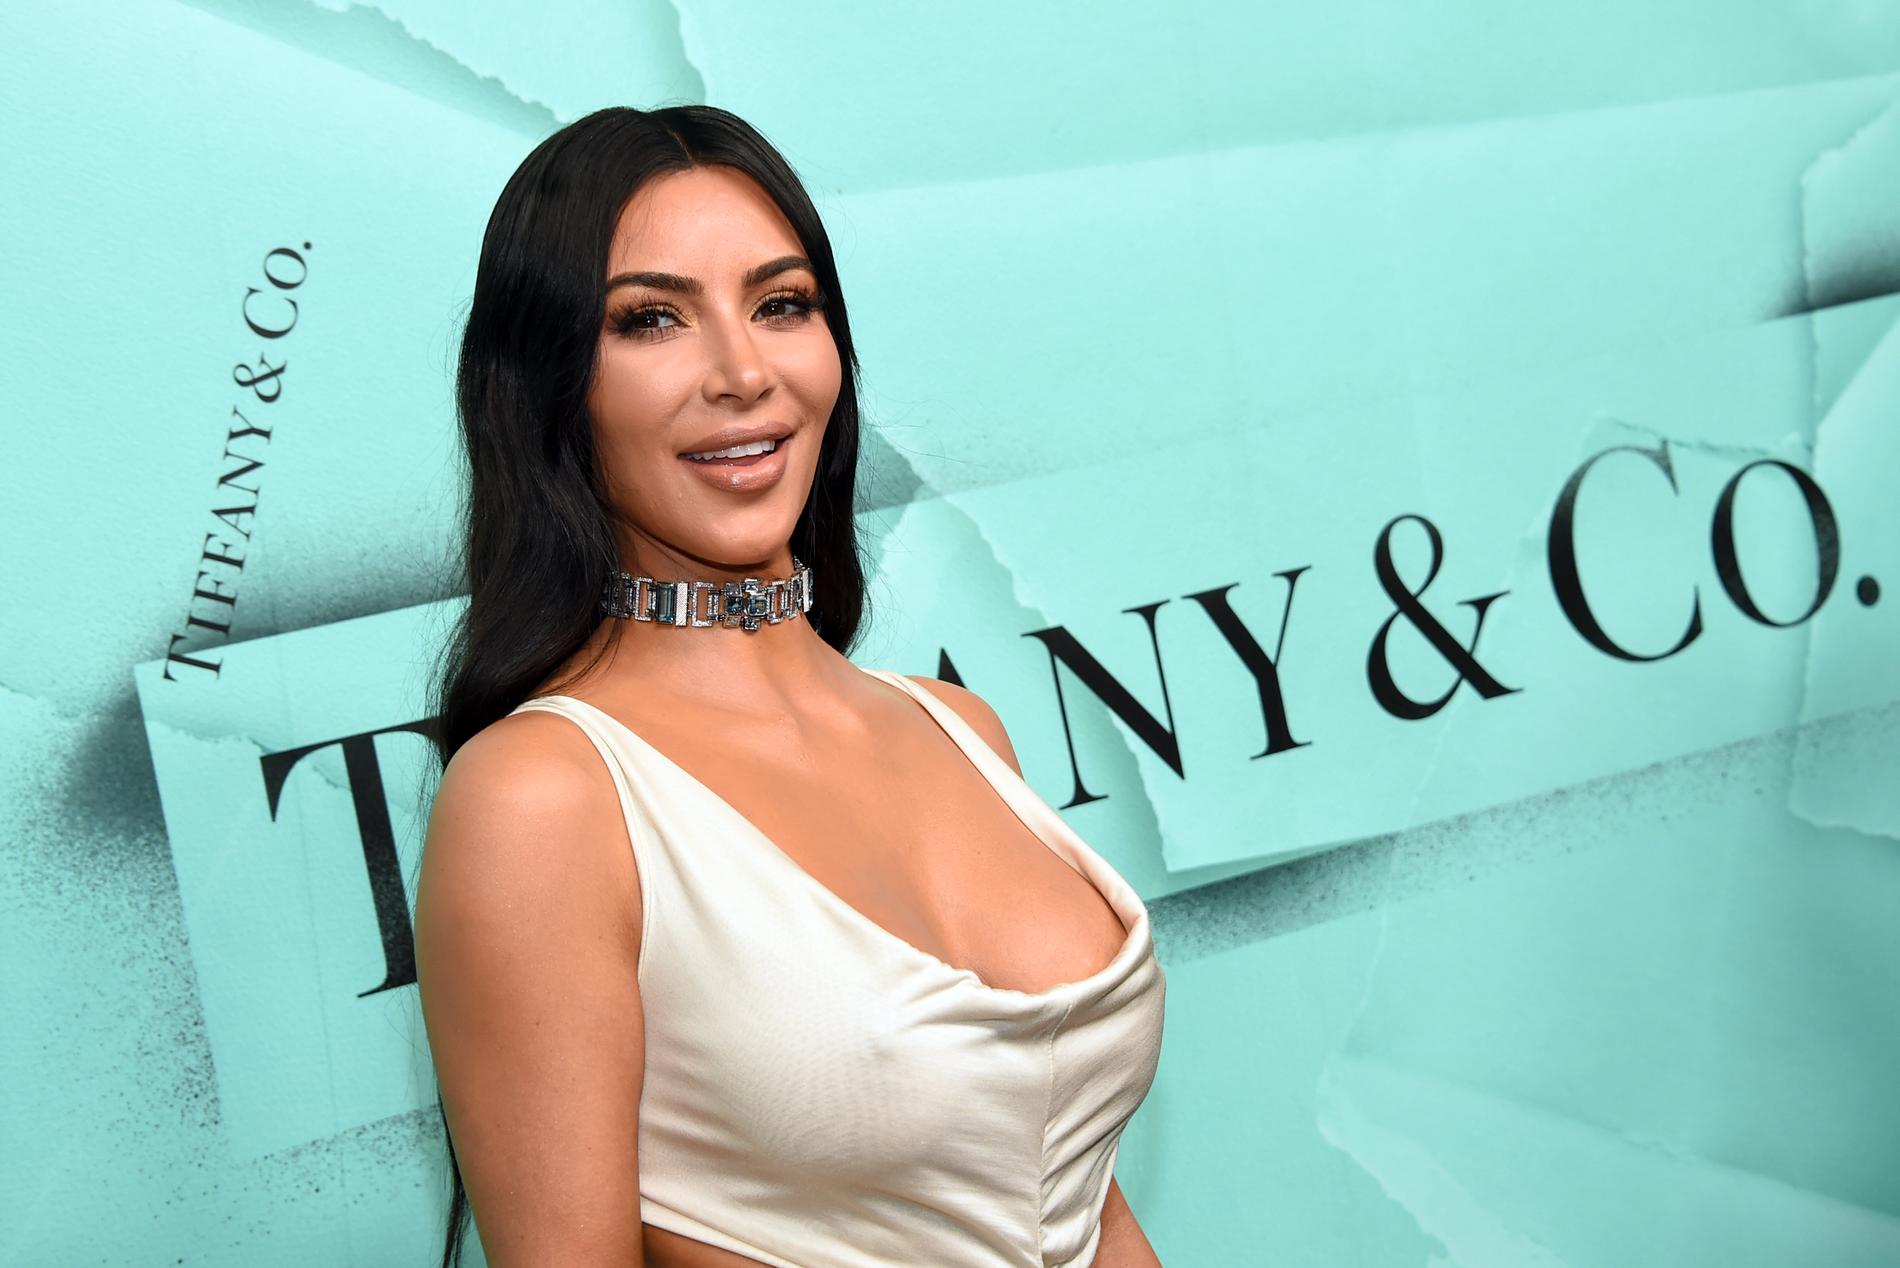 På modellen Kim Kardashian Wests konto publicerades ett inlägg där det stod: "Känner mig bra! Alla BTC som skickas till mig kommer dubbleras".